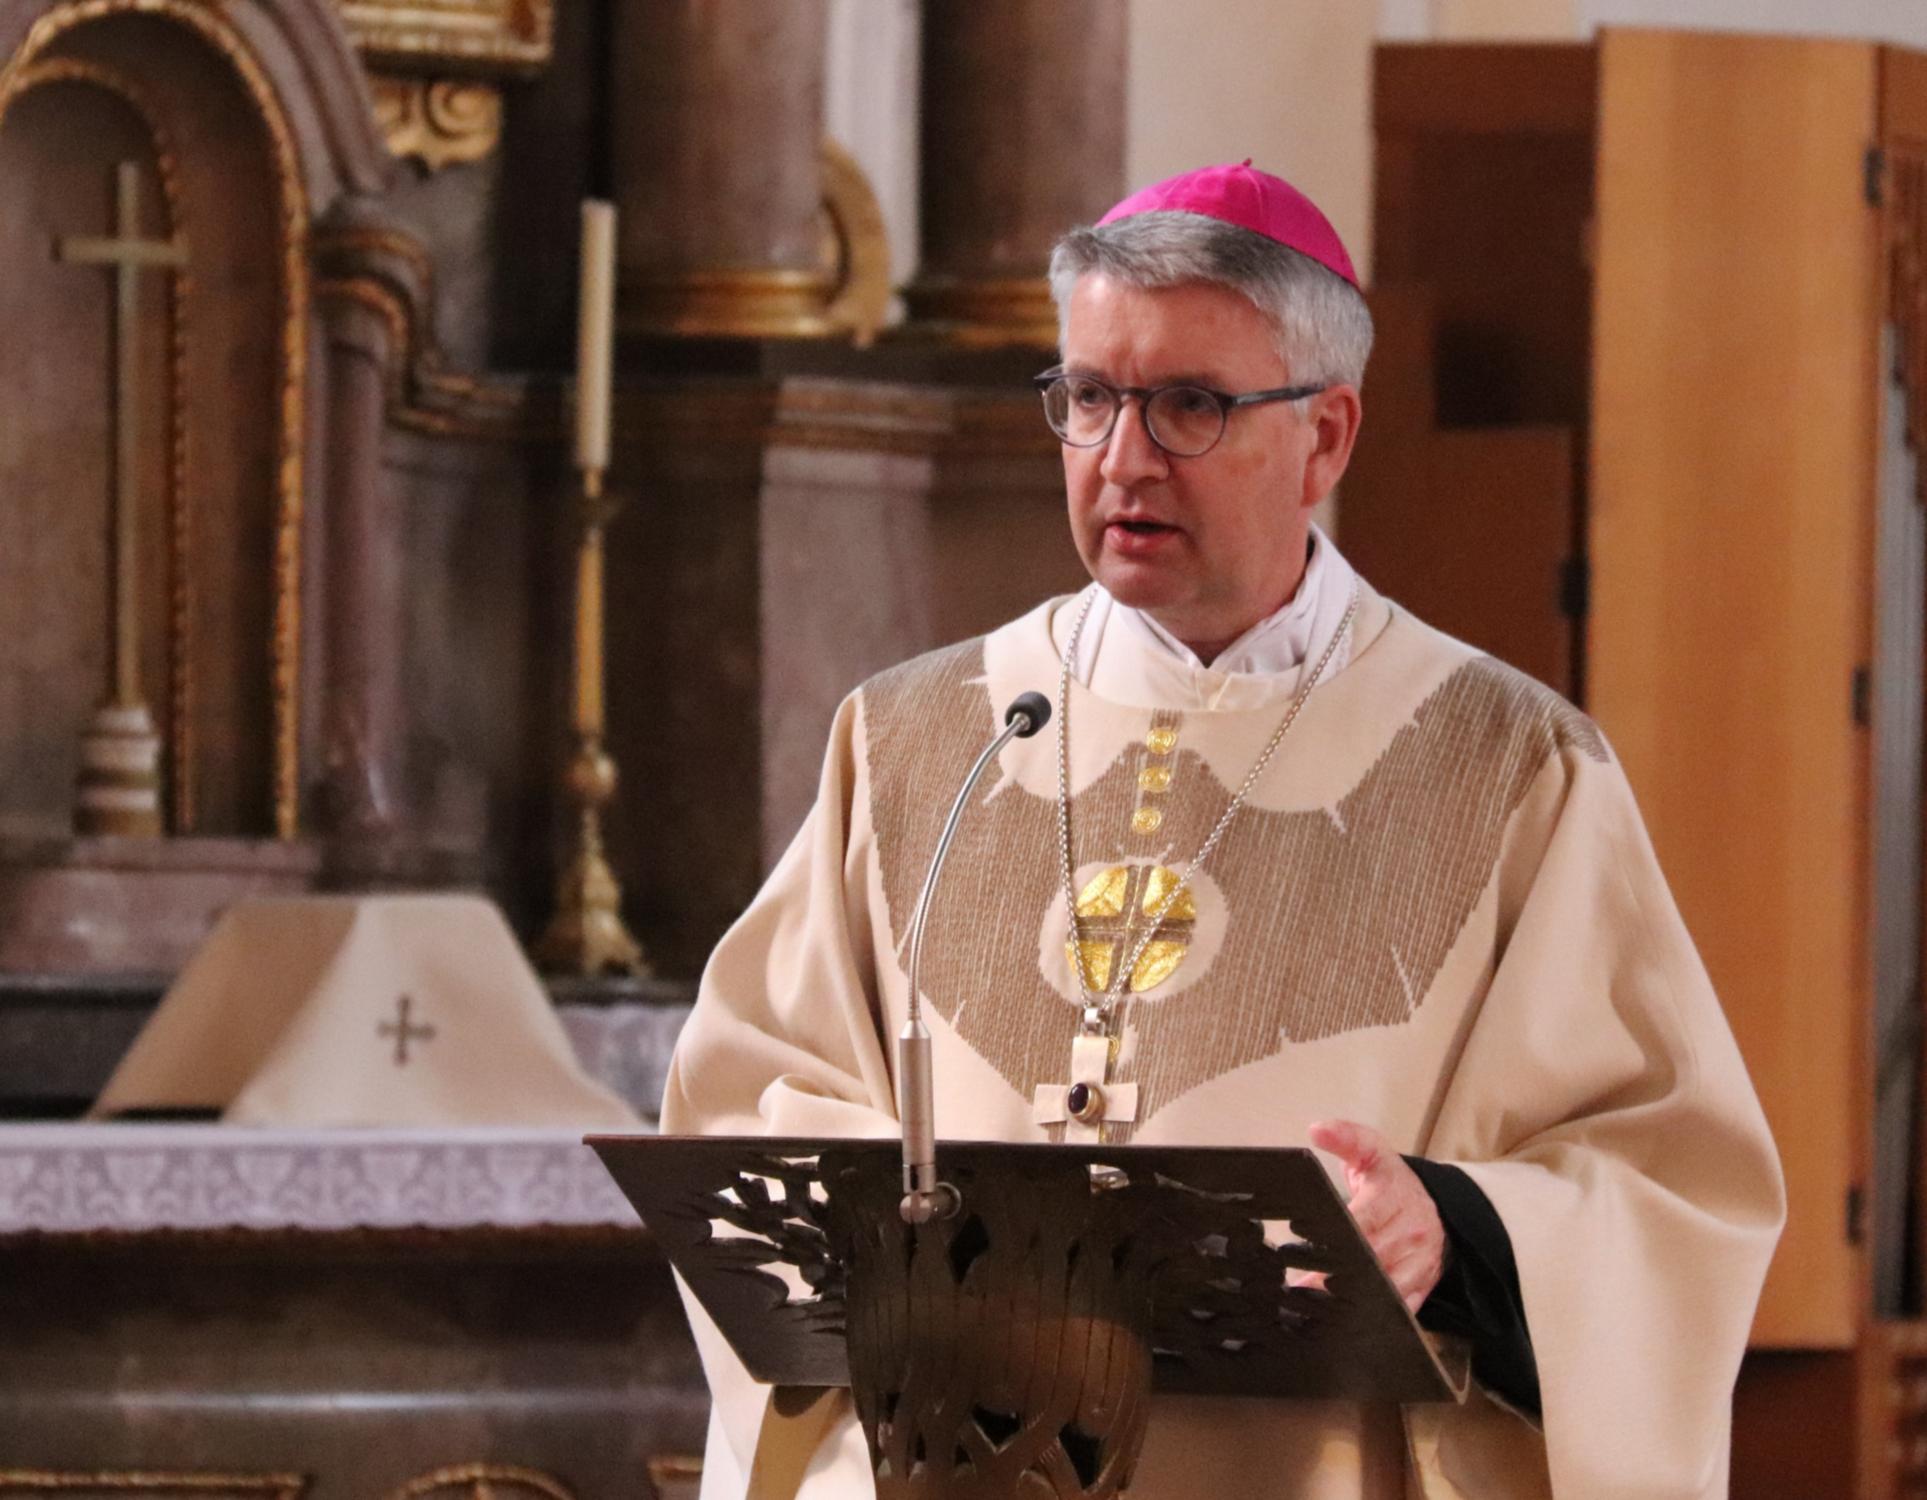 Bischof Peter Kohlgraf bei seiner Predigt zur Verleihung der Missio canonica (c) Bistum Mainz/Hoffmann